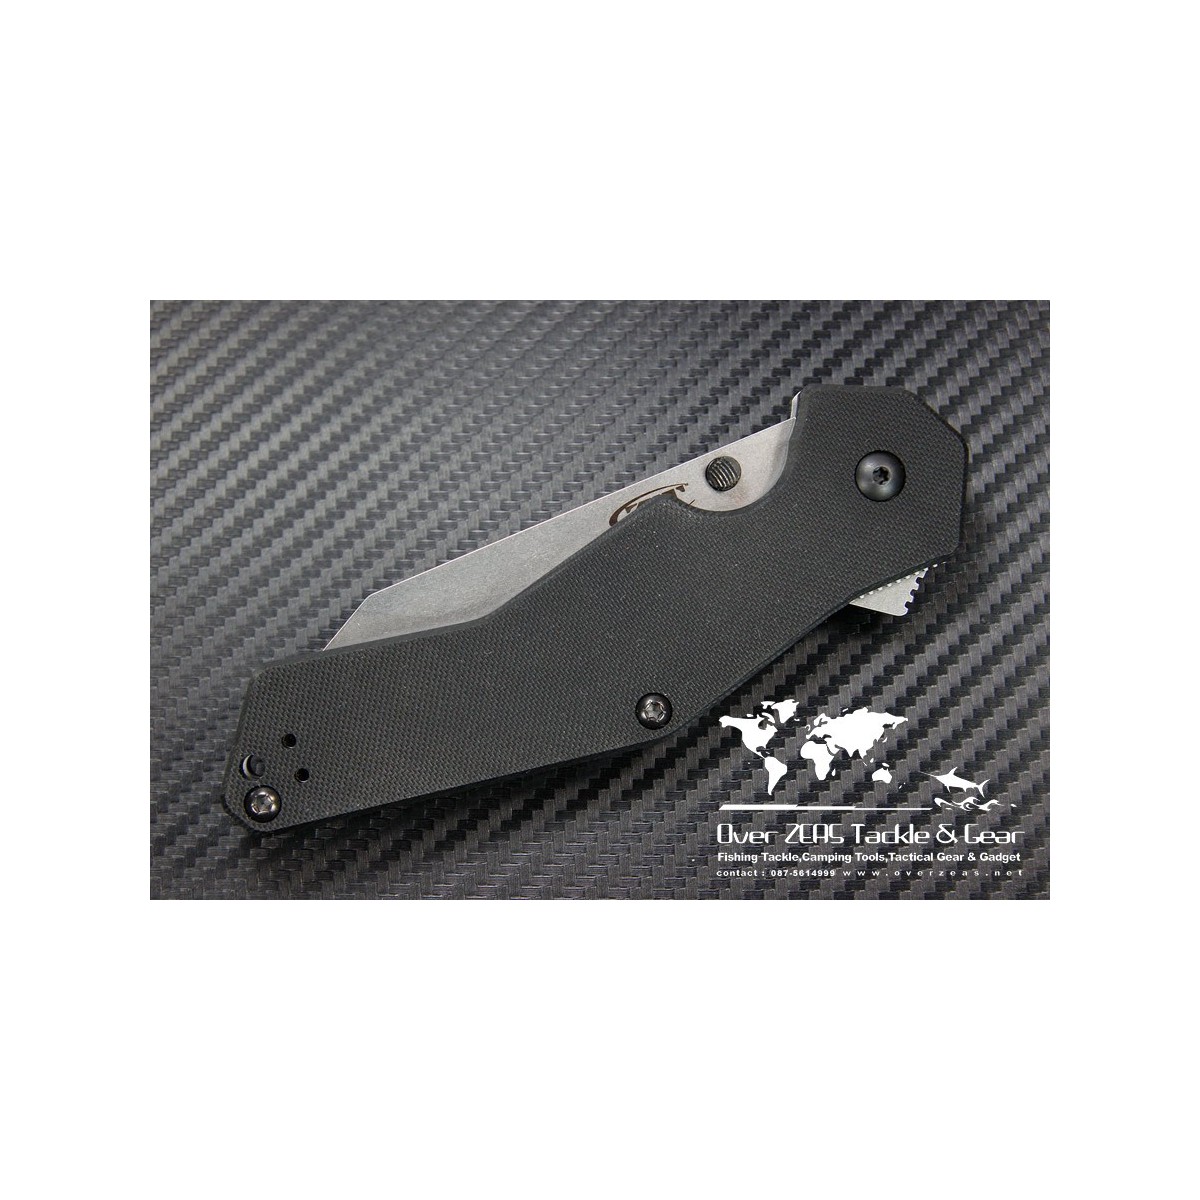 มีดพับ Zero Tolerance (ZT) Model 0700 Folder 3.375" S30V Tanto Stonewash Blade, G10 Handles